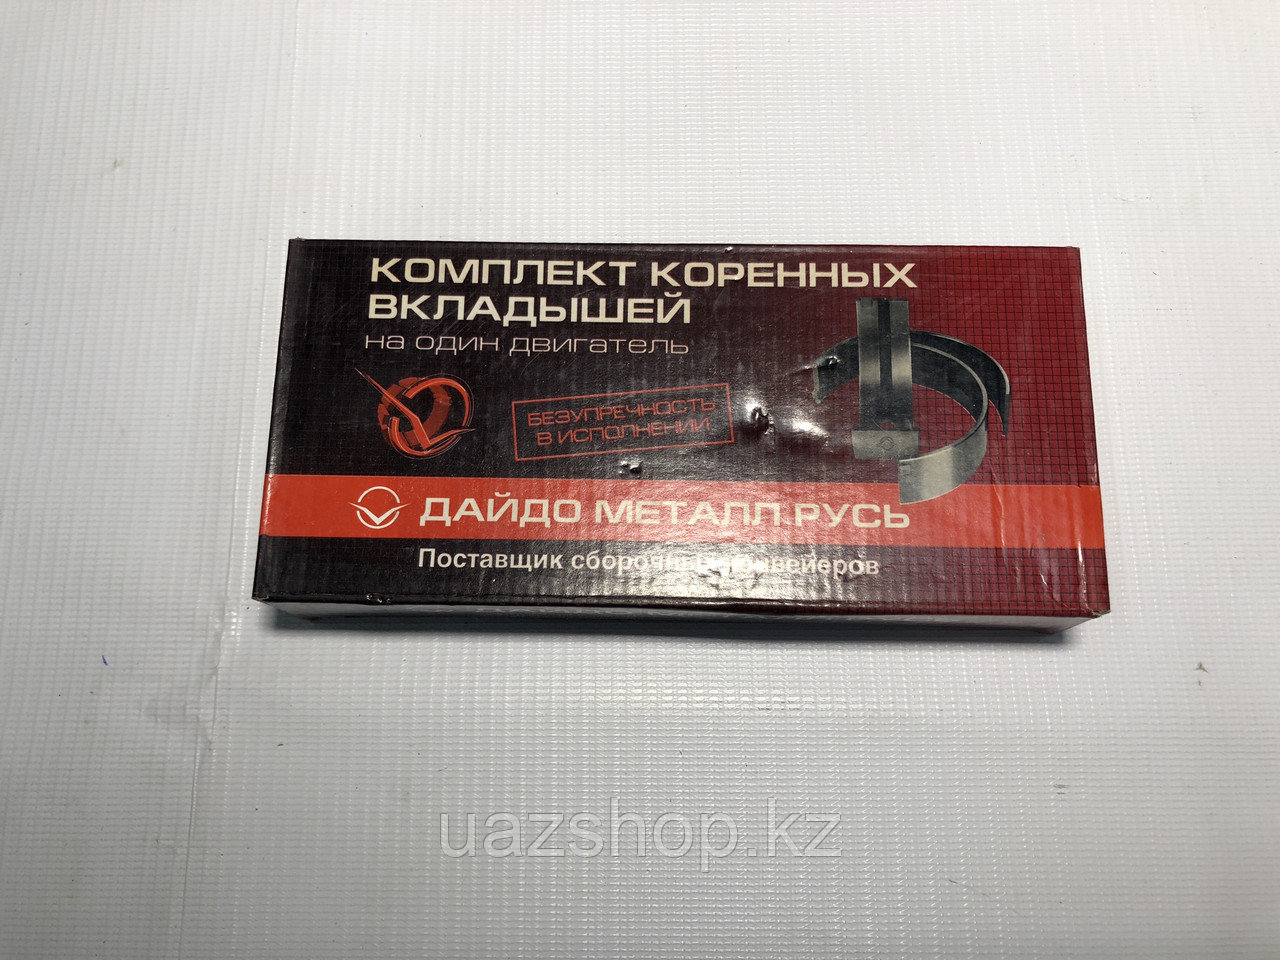 Комплект коренных вкладышей (0,50) для двигателей УМЗ- 414/417/421/ ЗМЗ-402/ ГАЗ-24